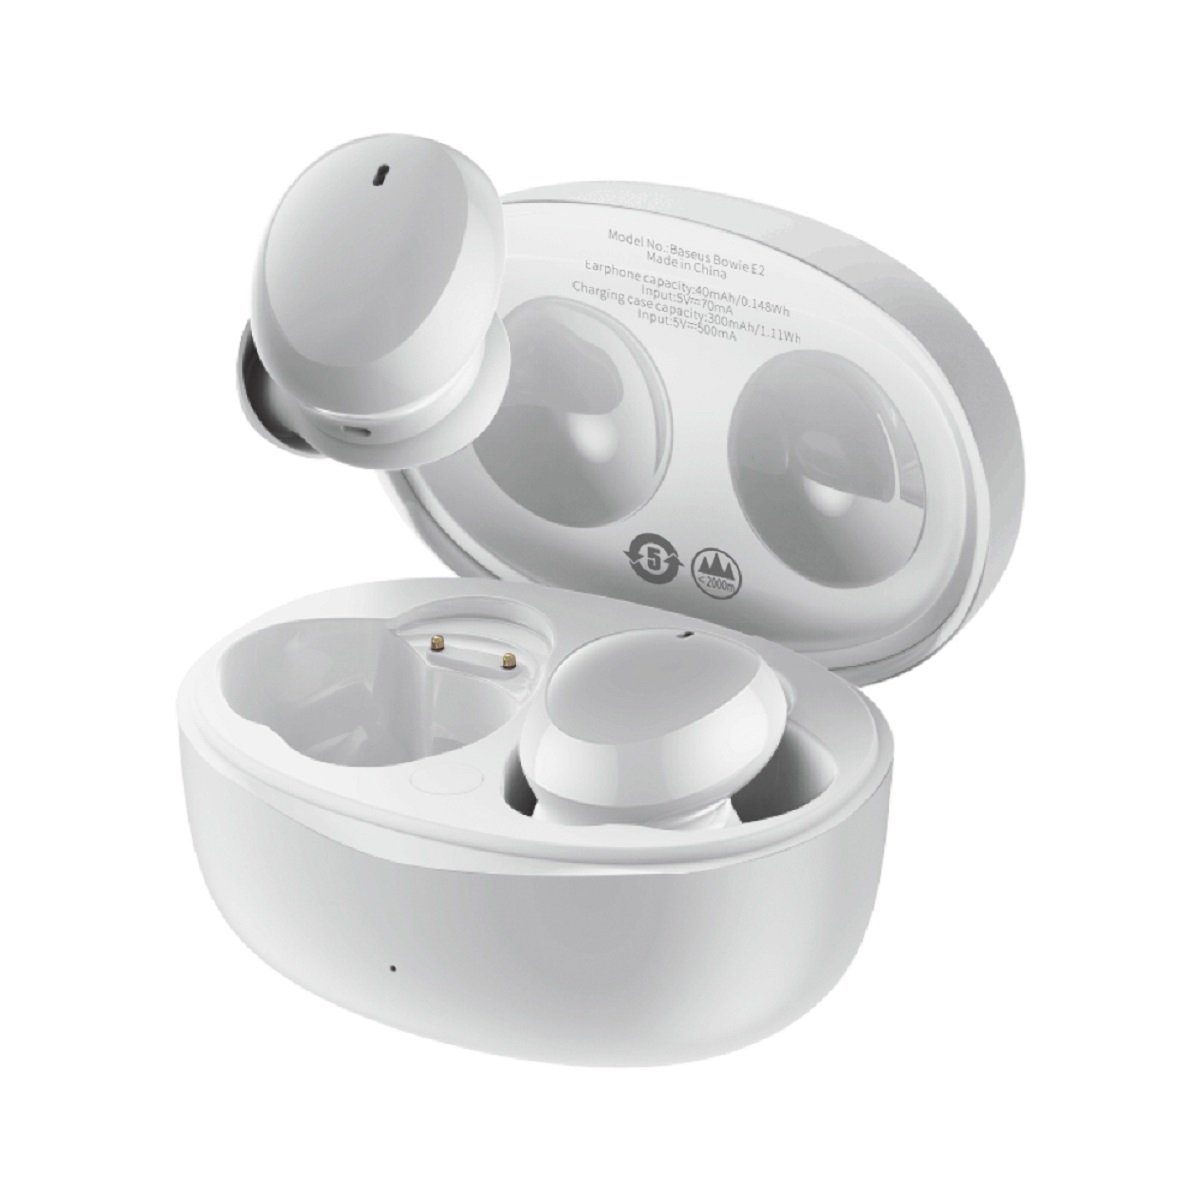 Wasserdicht: E2 Baseus Bluetooth (Bluetooth, zertifiziert) IP55 Bluetooth, Bluetooth-Kopfhörer TWS Bowie Touch Wasserdicht Kopfhörer Baseus IP55 Wireless Weiß 5.2 Control,